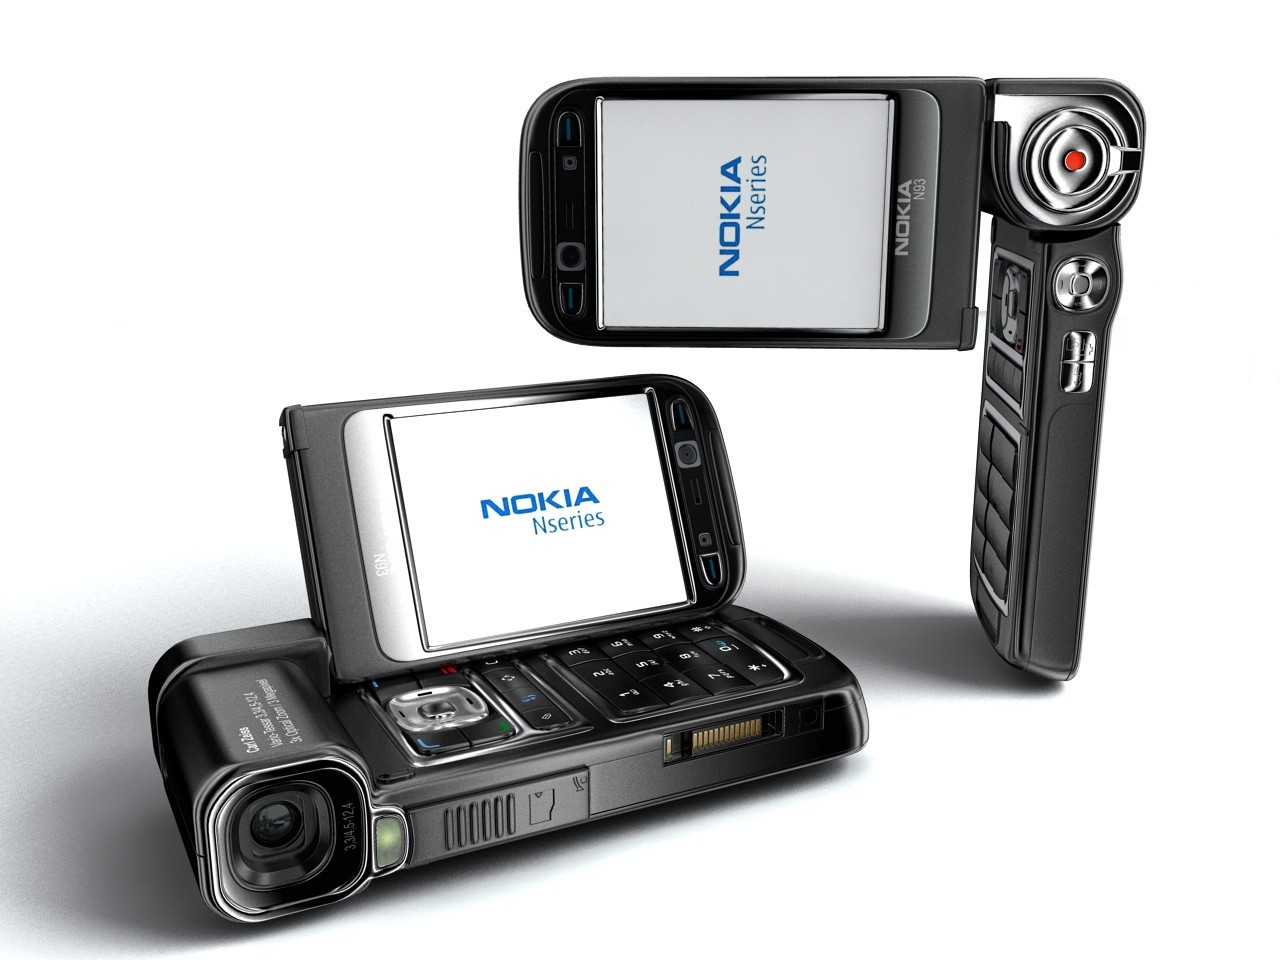 Nokia N93 retro foldable